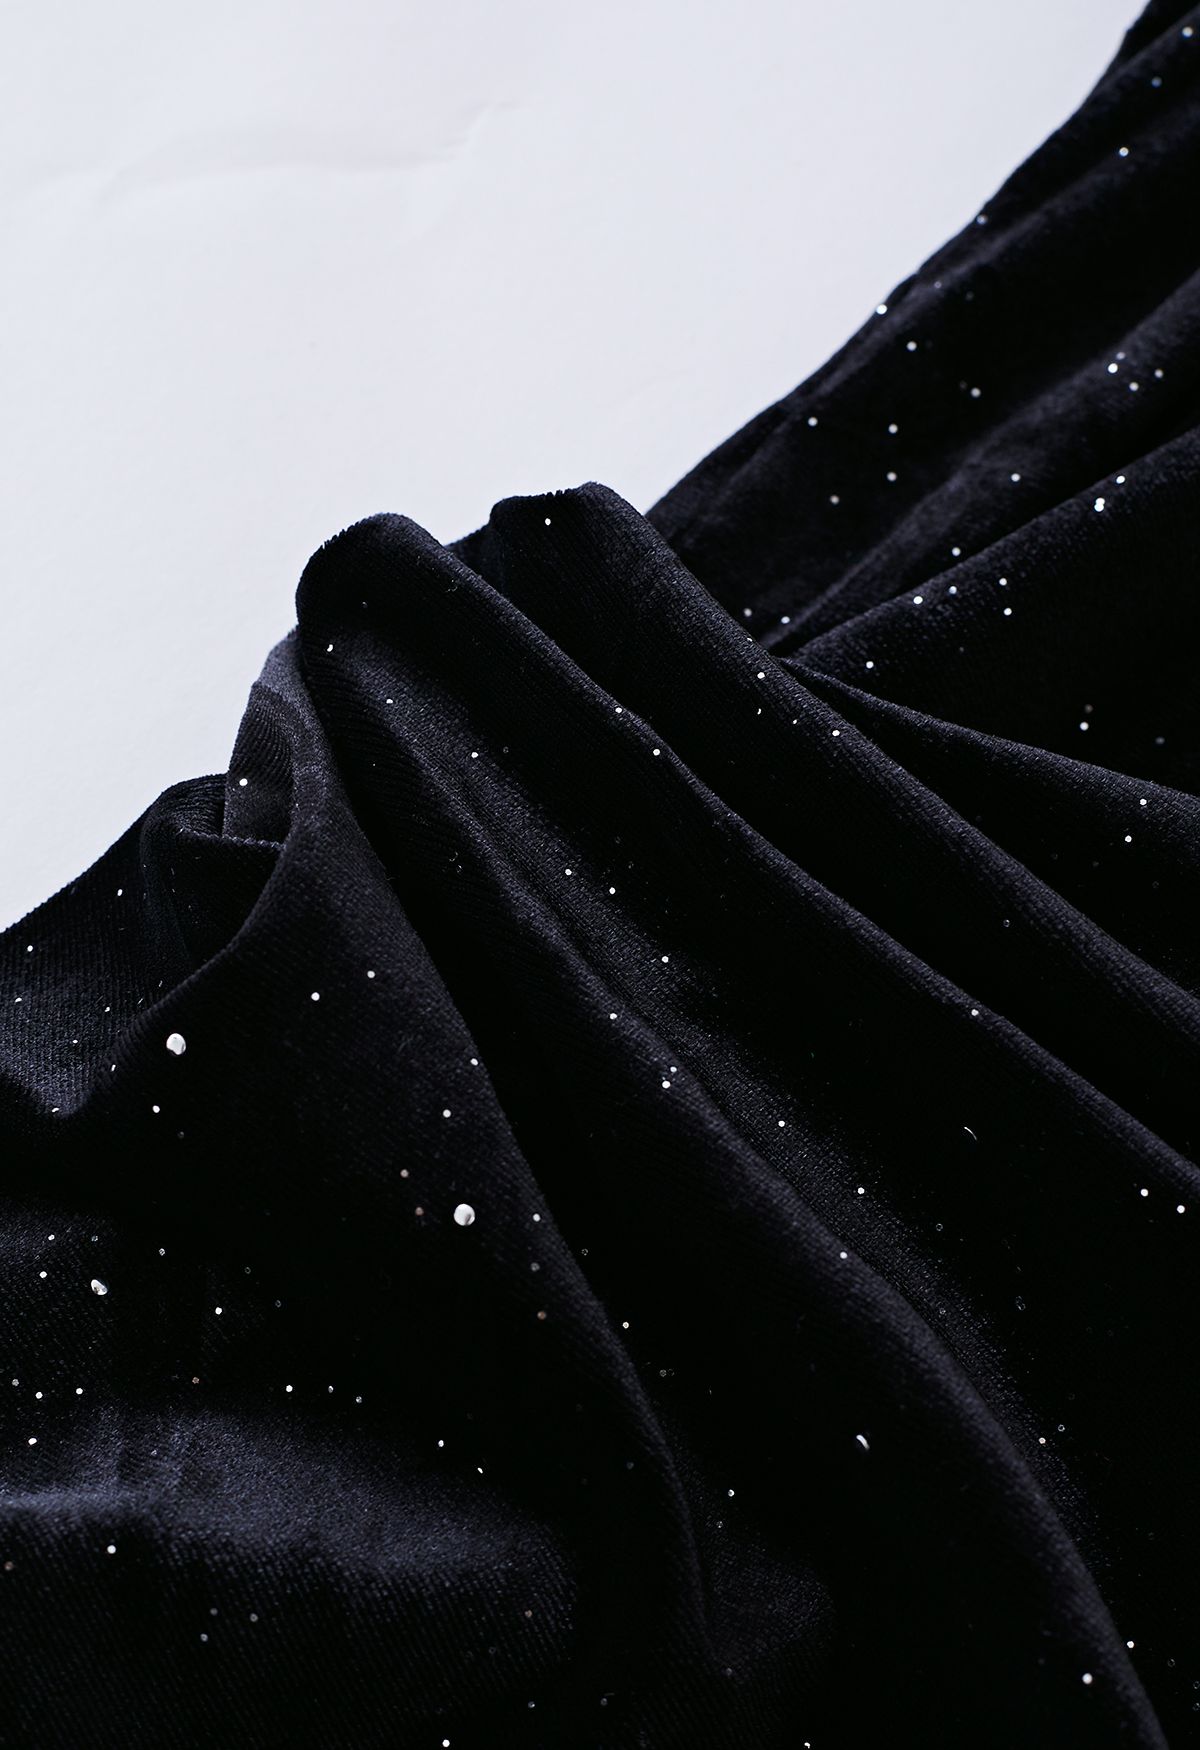 Glittery Velvet Wrap Midi Dress in Black